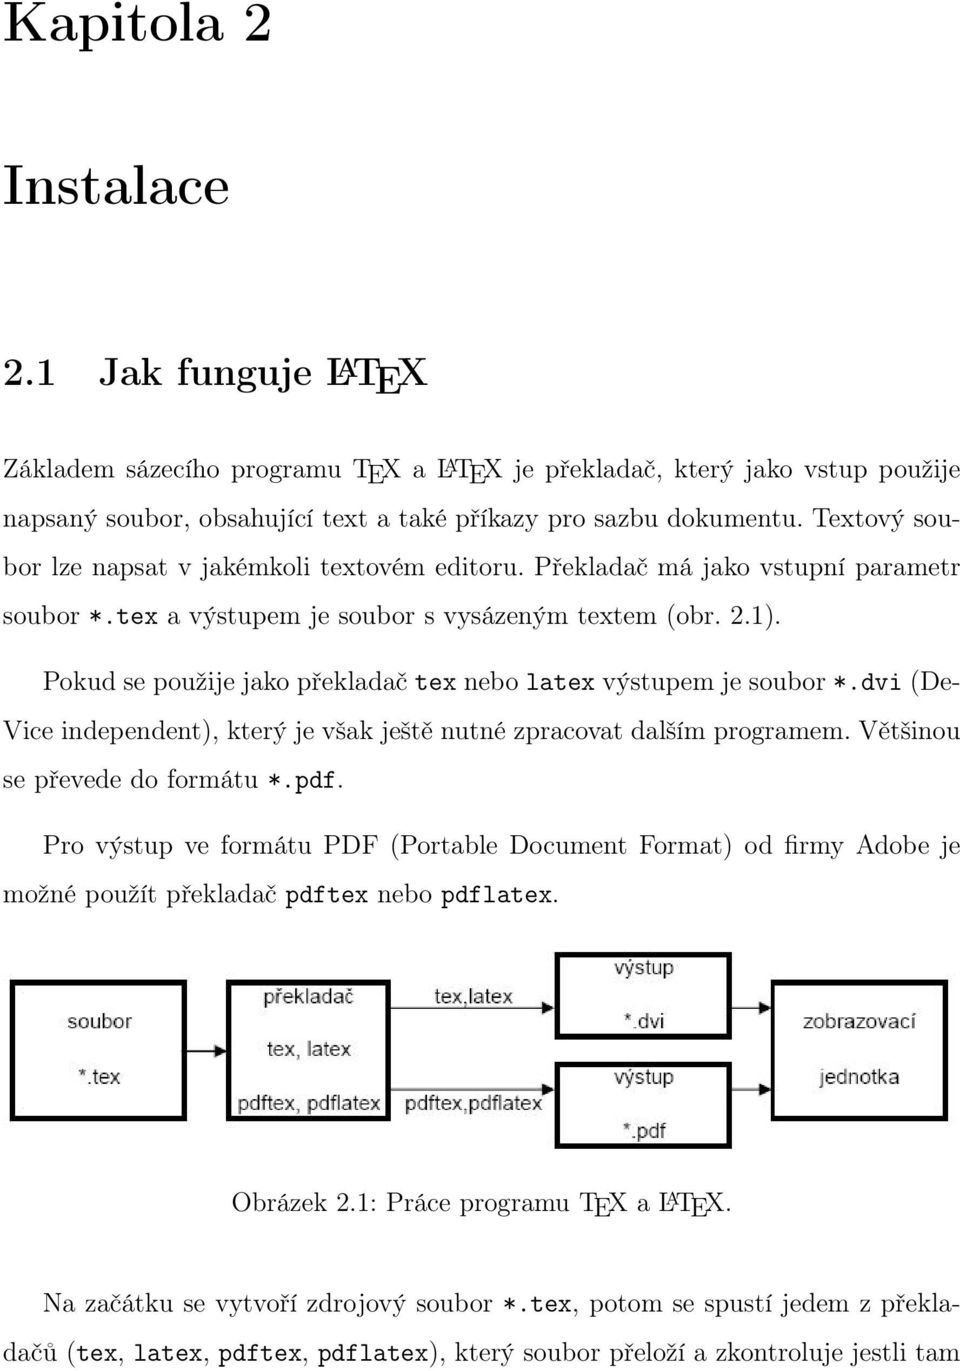 Pokud se použije jako překladač tex nebo latex výstupem je soubor *.dvi (De- Vice independent), který je však ještě nutné zpracovat dalším programem. Většinou se převede do formátu *.pdf.